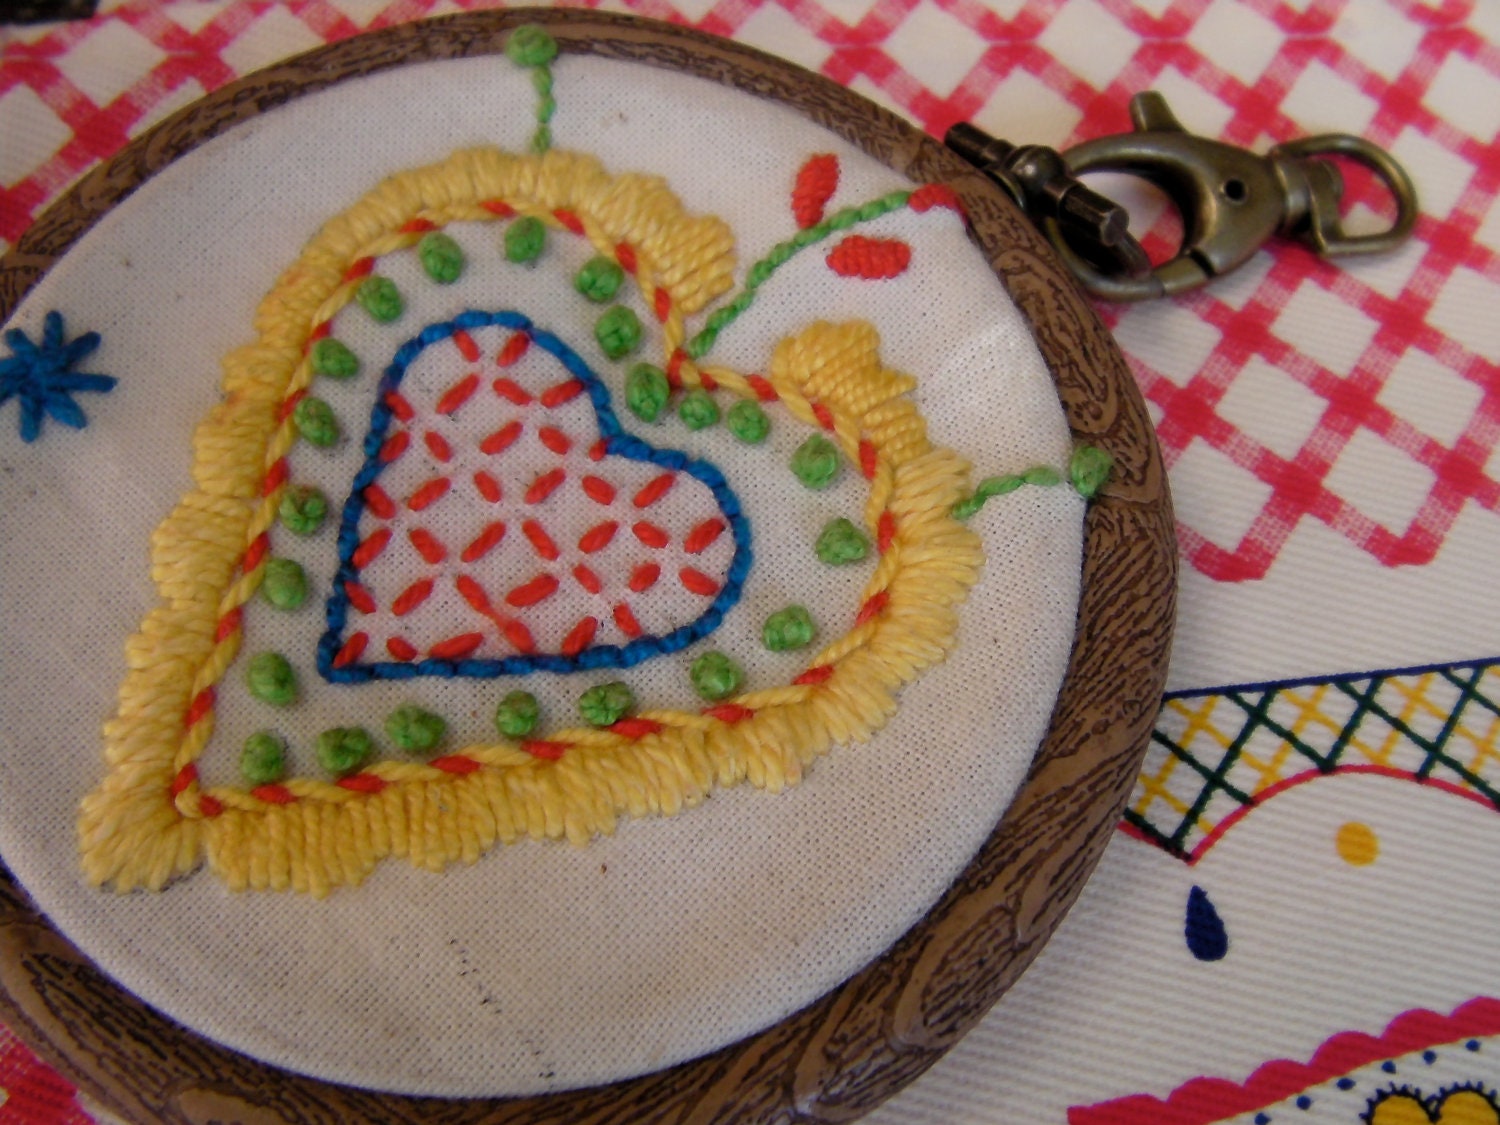 DIY Stitch by Stitch embroidery kit by Agulha Não Pica